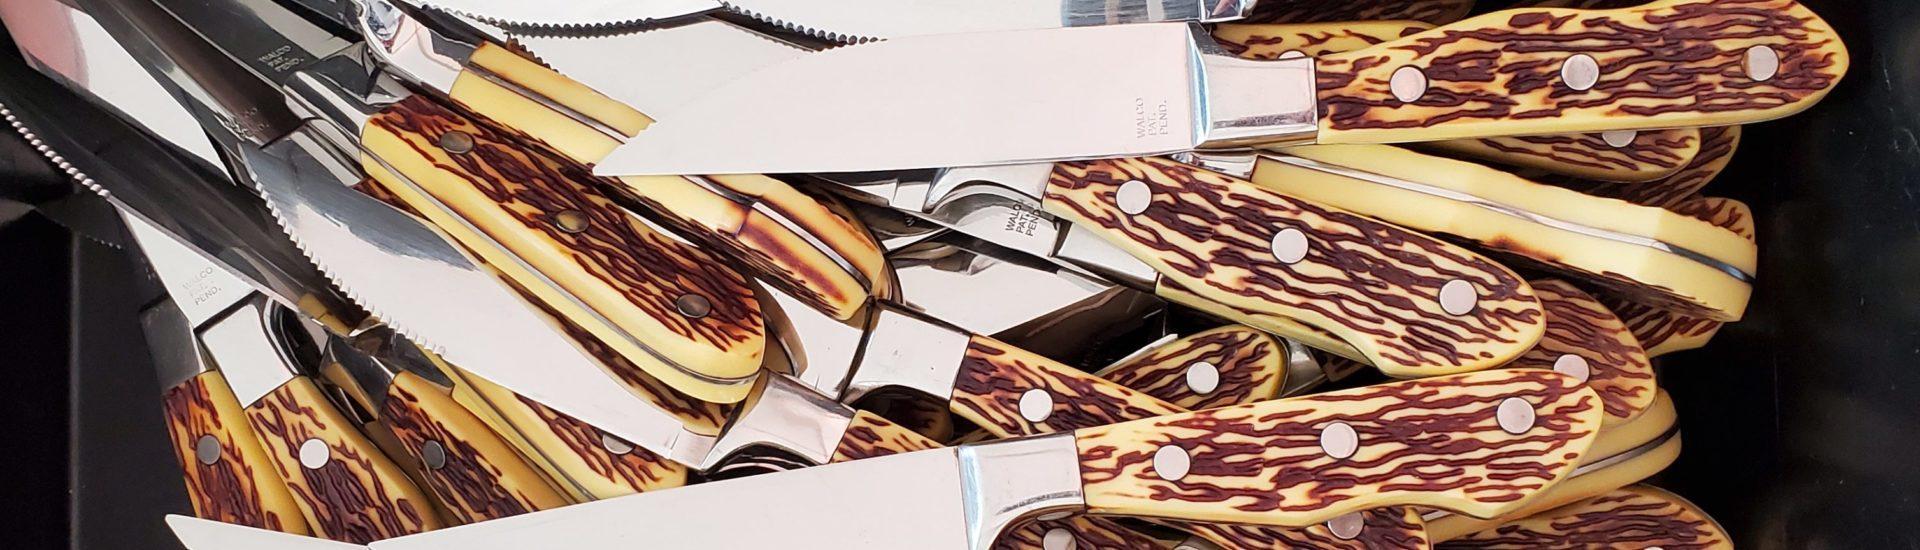 antler handle knives